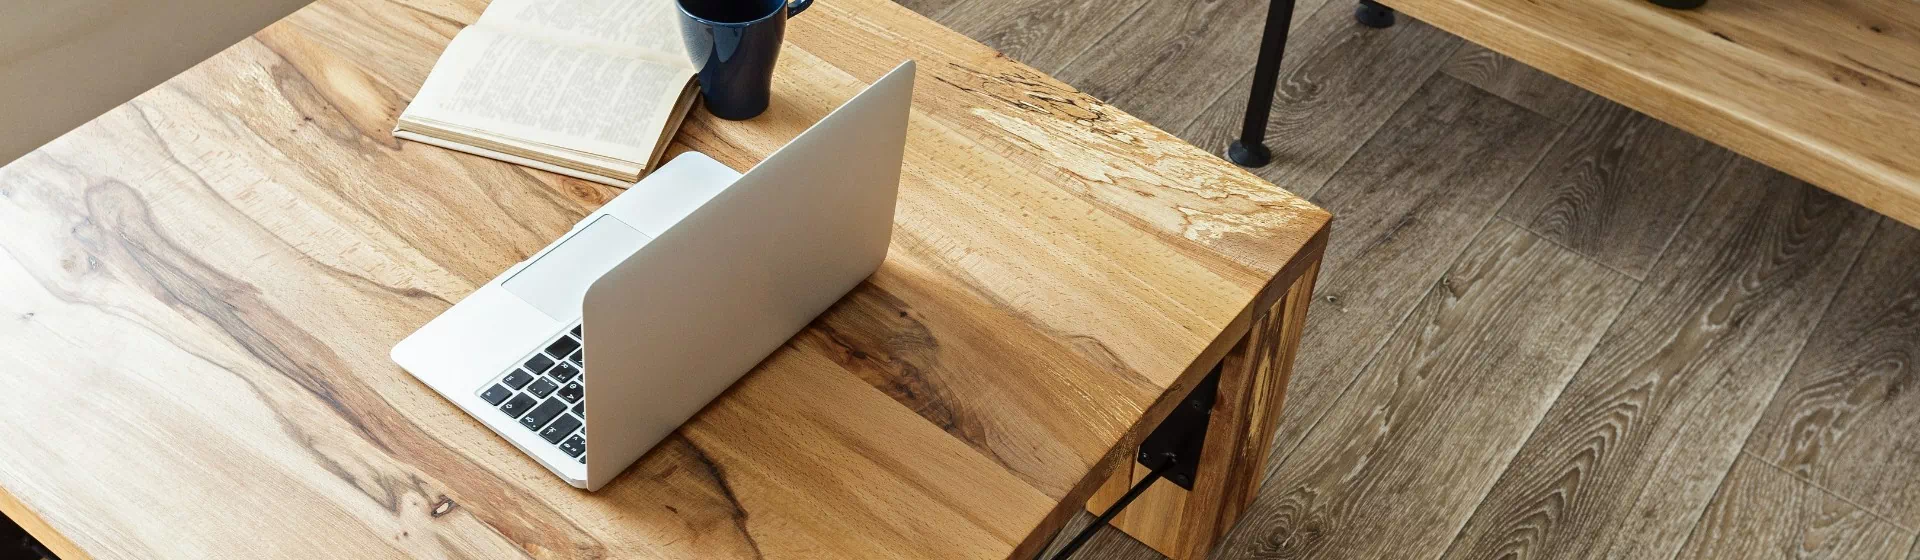 laptop na stoliku